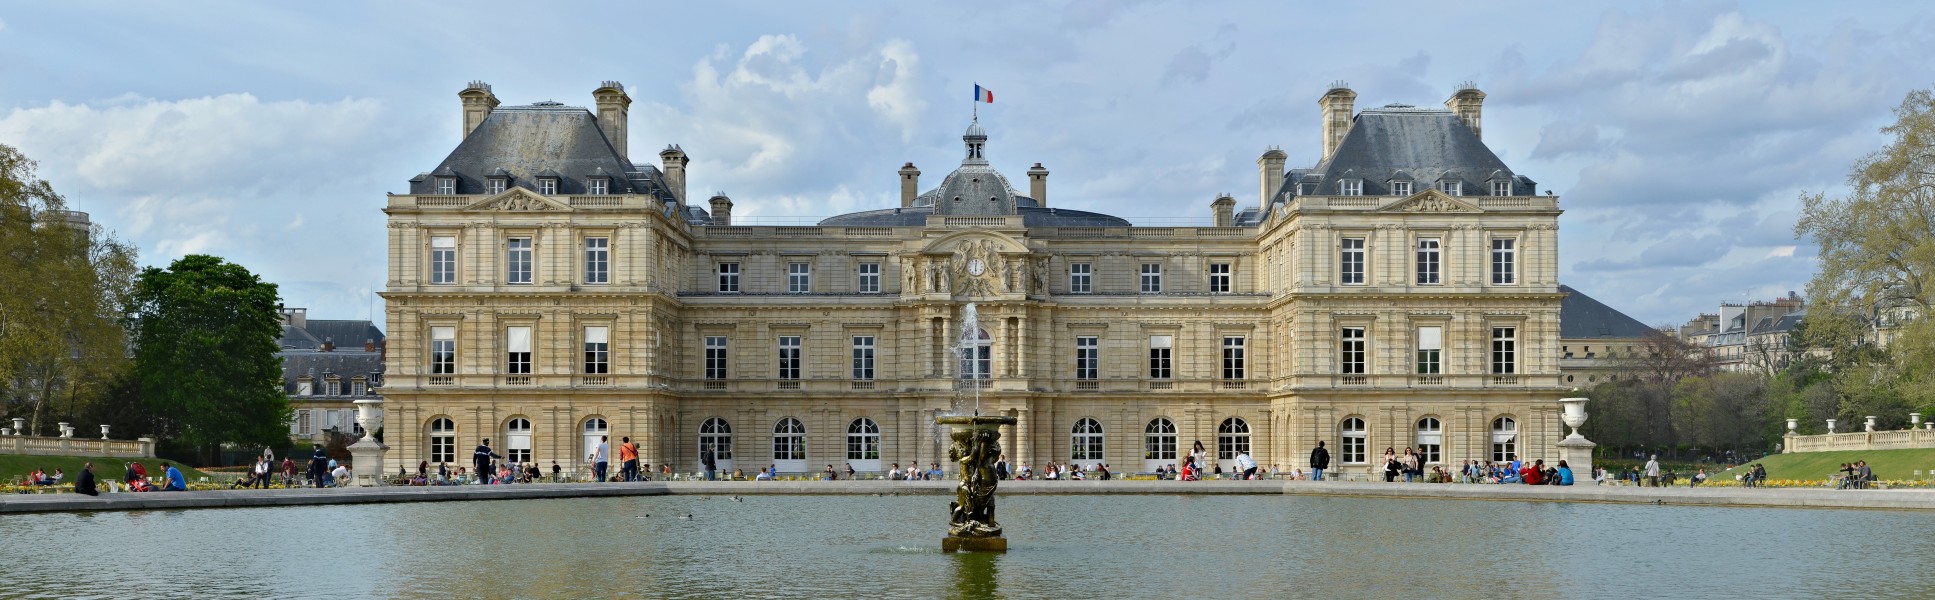 Paris Palais du Luxembourg façade s printemps 2014